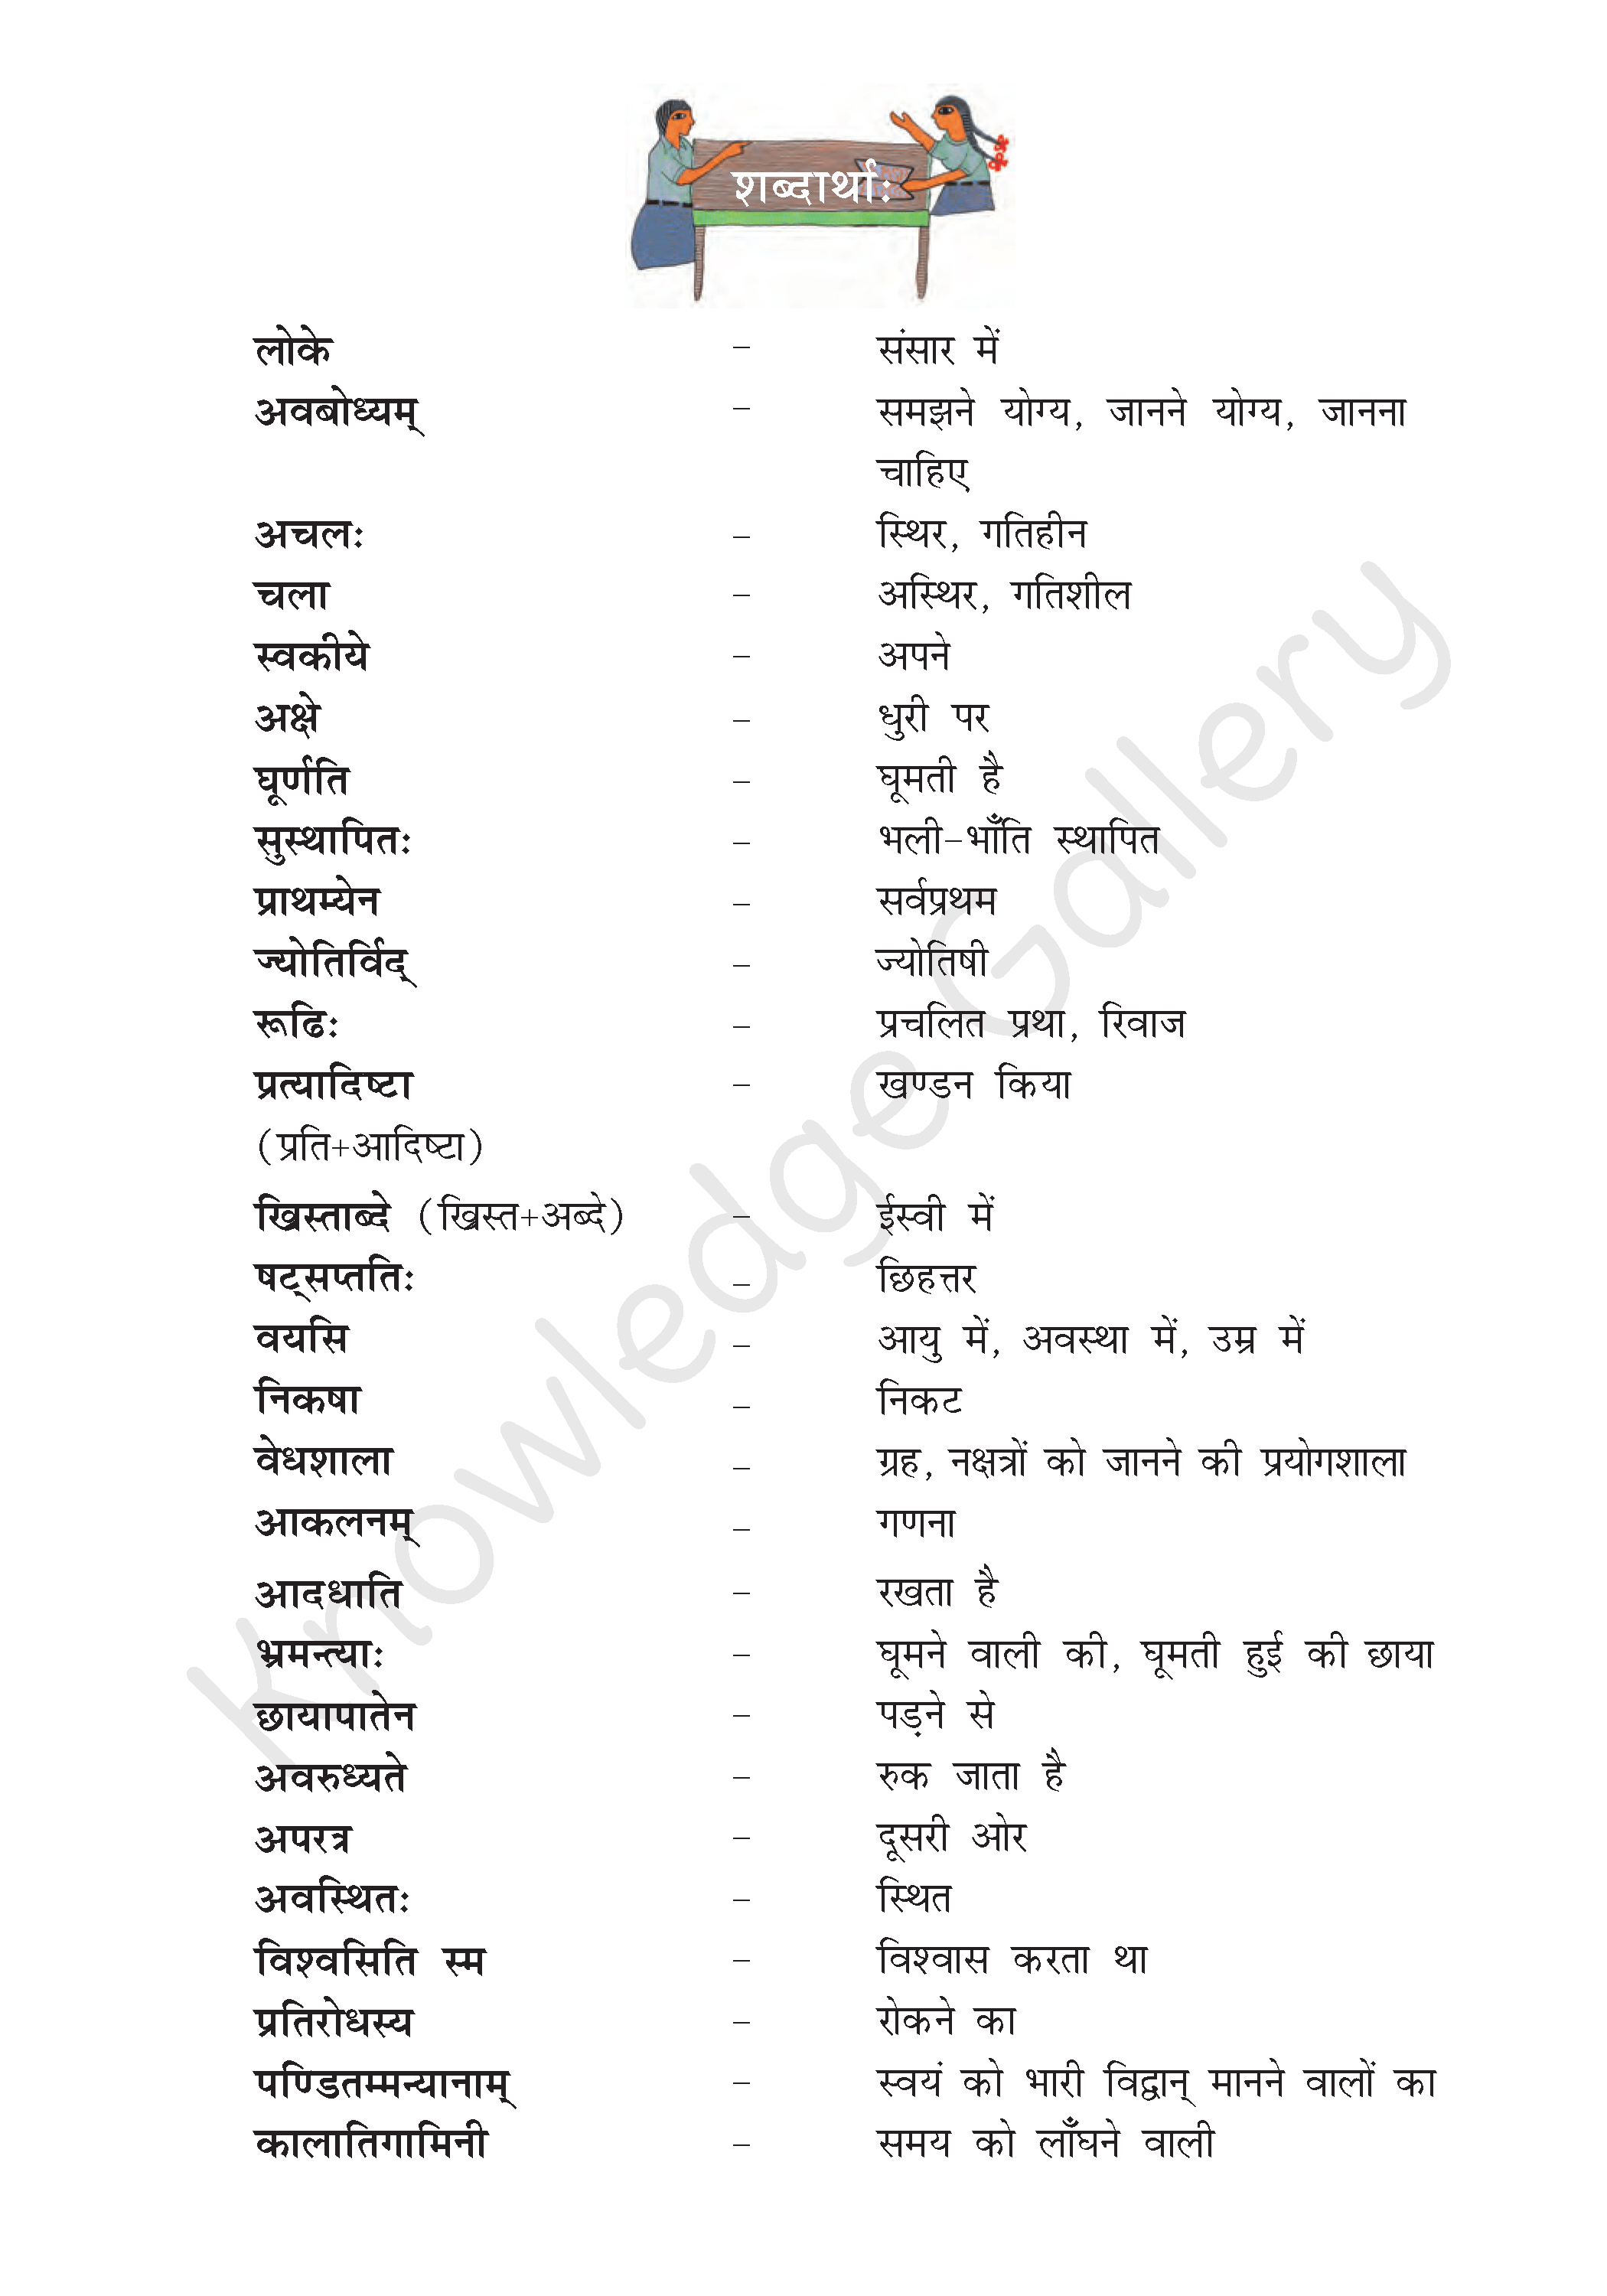 NCERT Solution For Class 8 Sanskrit Chapter 14 part 3